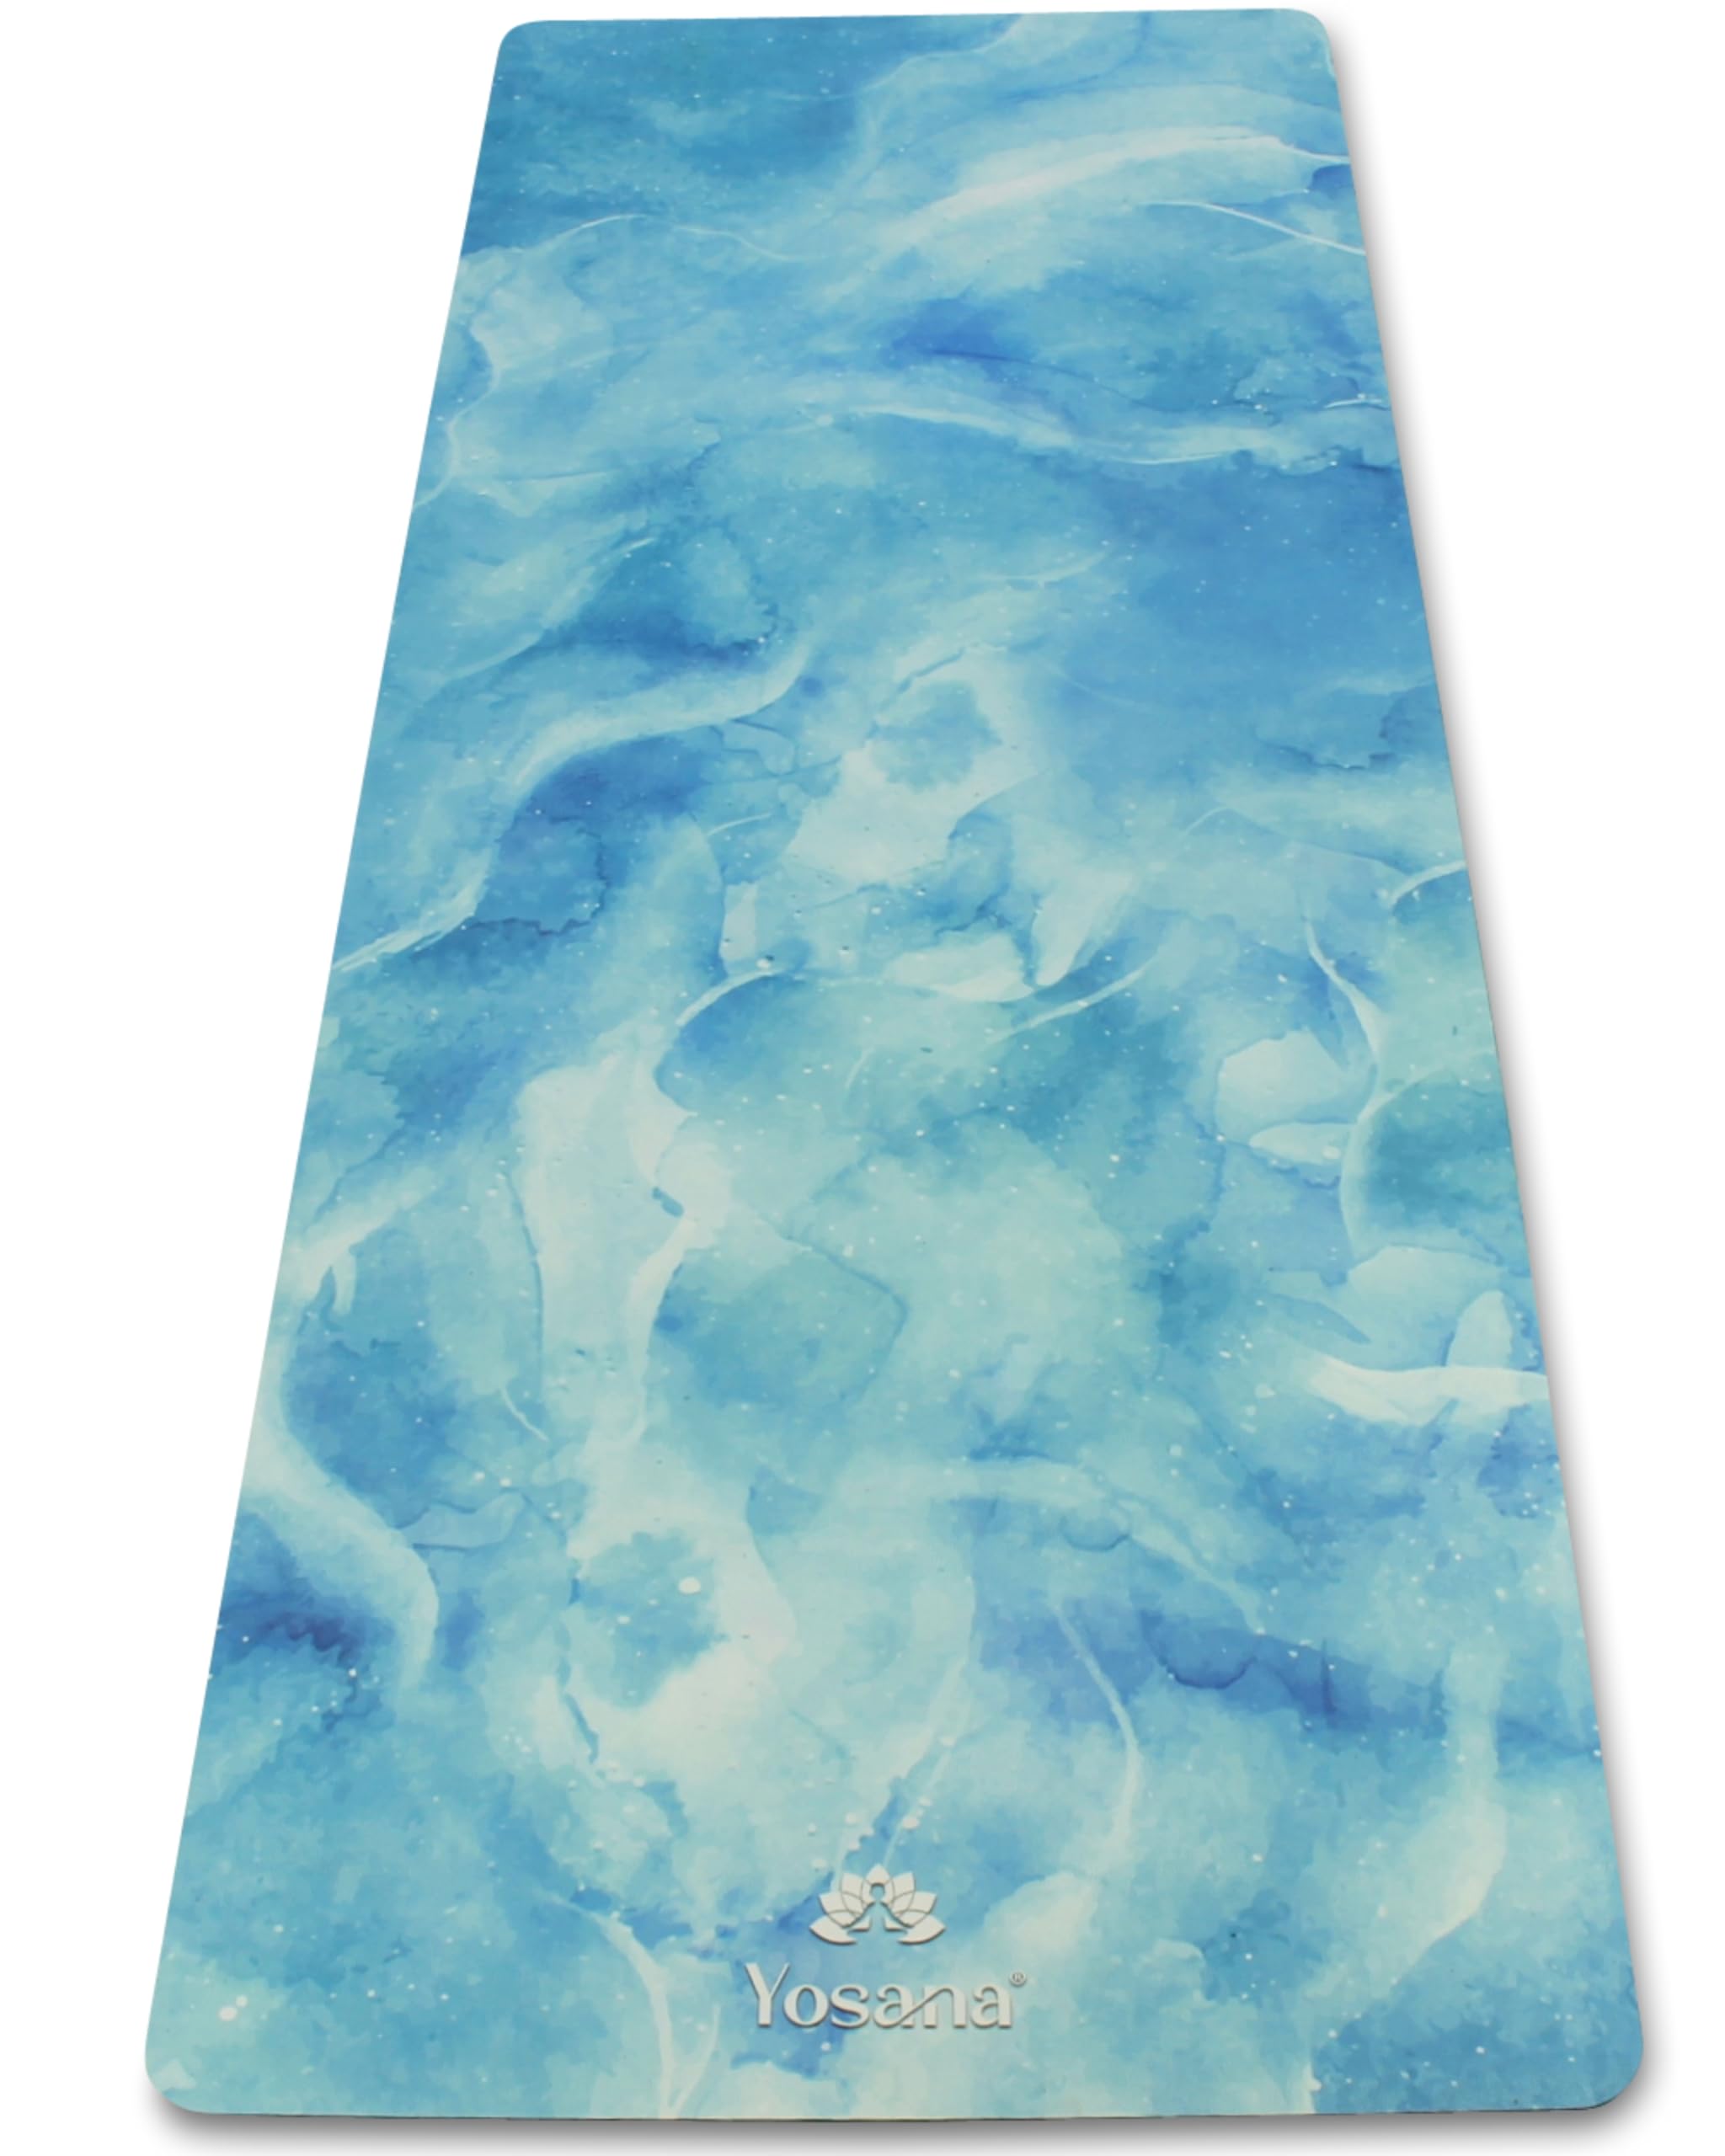 Yosana Yogamatte aus Naturkautschuk - rutschfest, Nachhaltige Yoga Matte mit Mikrofaseroberfläche zur raschen Aufnahme von Schweiß – Maschinenwaschbare Sportmatte - 183 x 68 cm